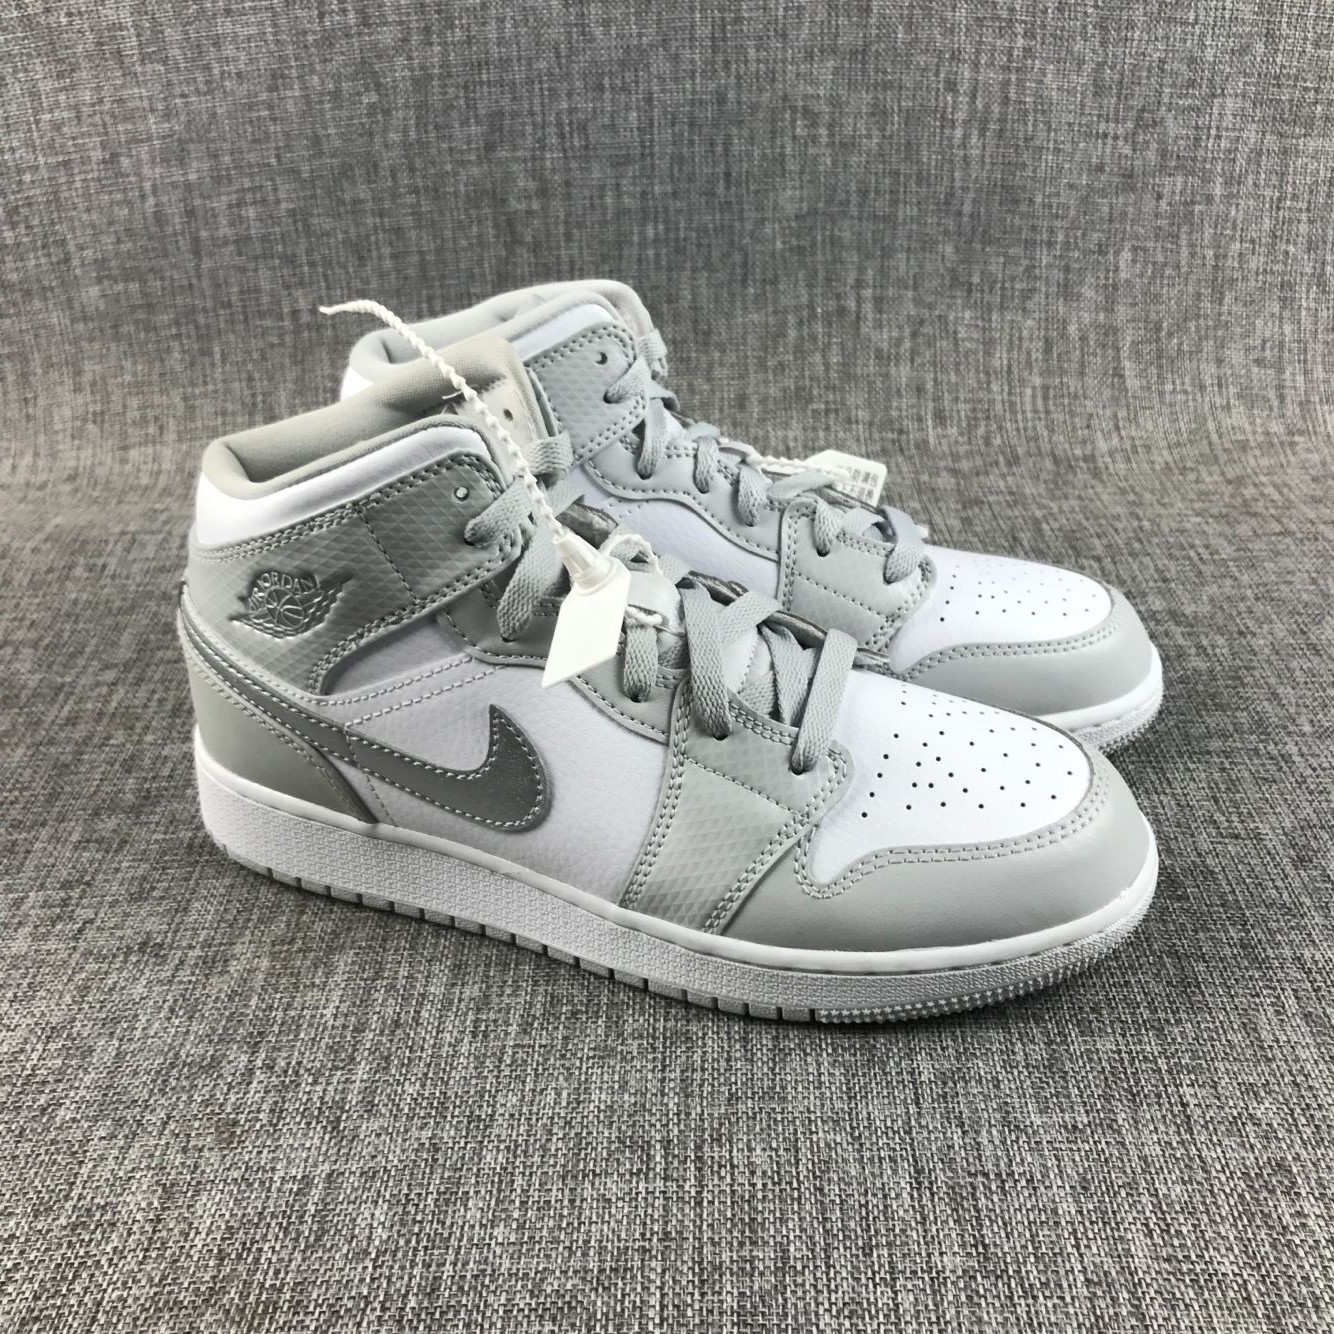 2018 Air Jordan 1 High White Silver Shoes